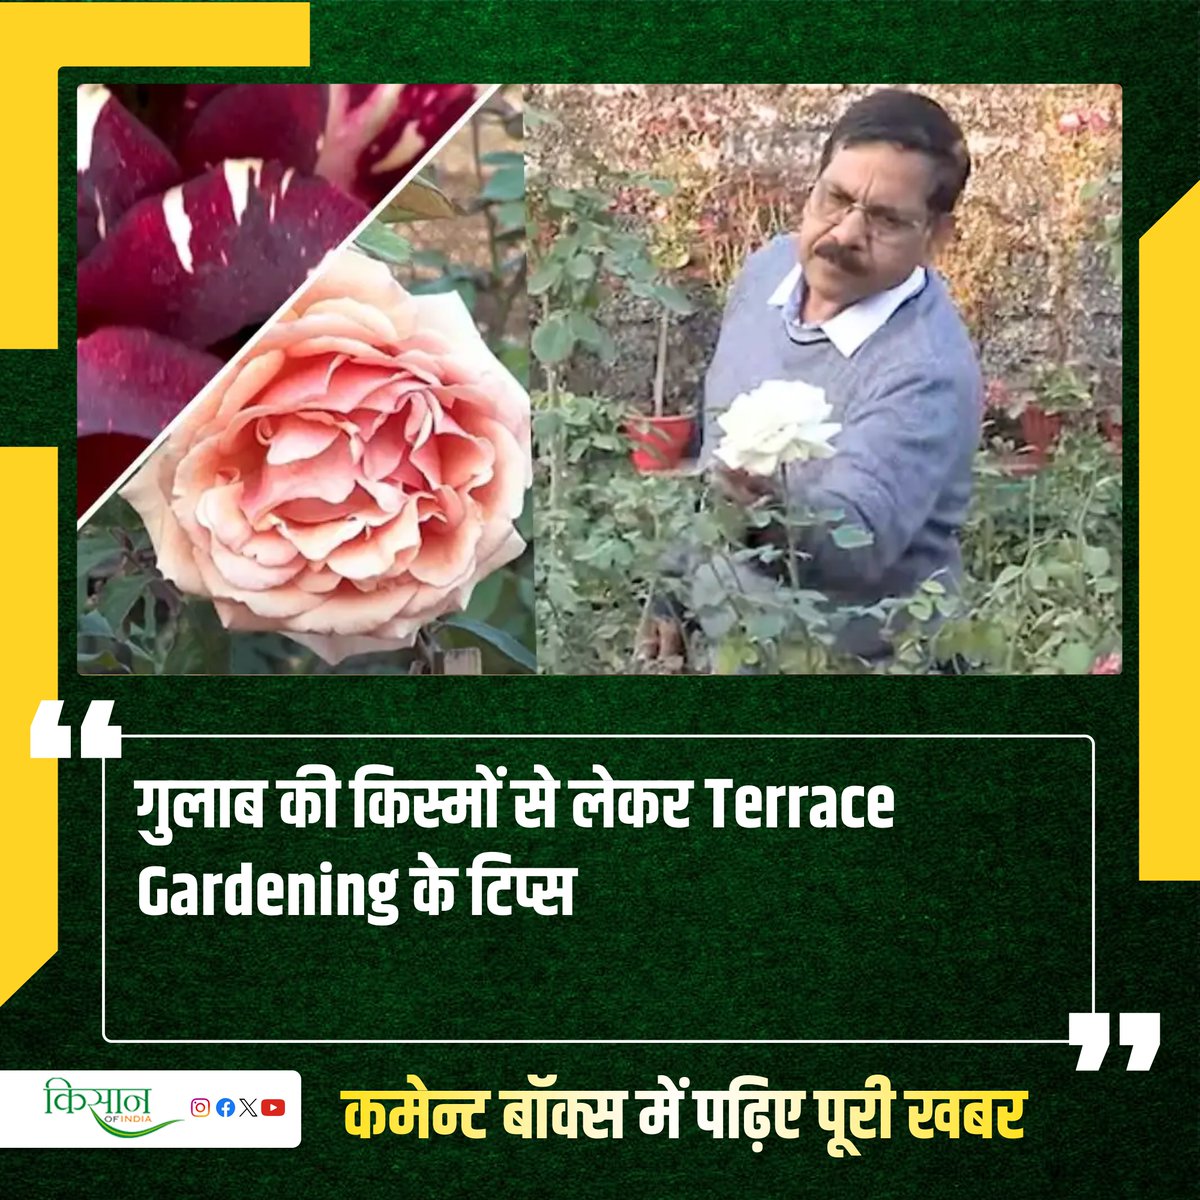 रेलवे में नौकरी करने वाले अनिल शर्मा कैसे नौकरी और अपने इतने बड़े गार्डन की अकेले ही देखभाल करते हैं,जानिए पूरी कहानी इस लेख में।
#Railway #AnilSharma #terrace #Gardening #KisanOfIndia